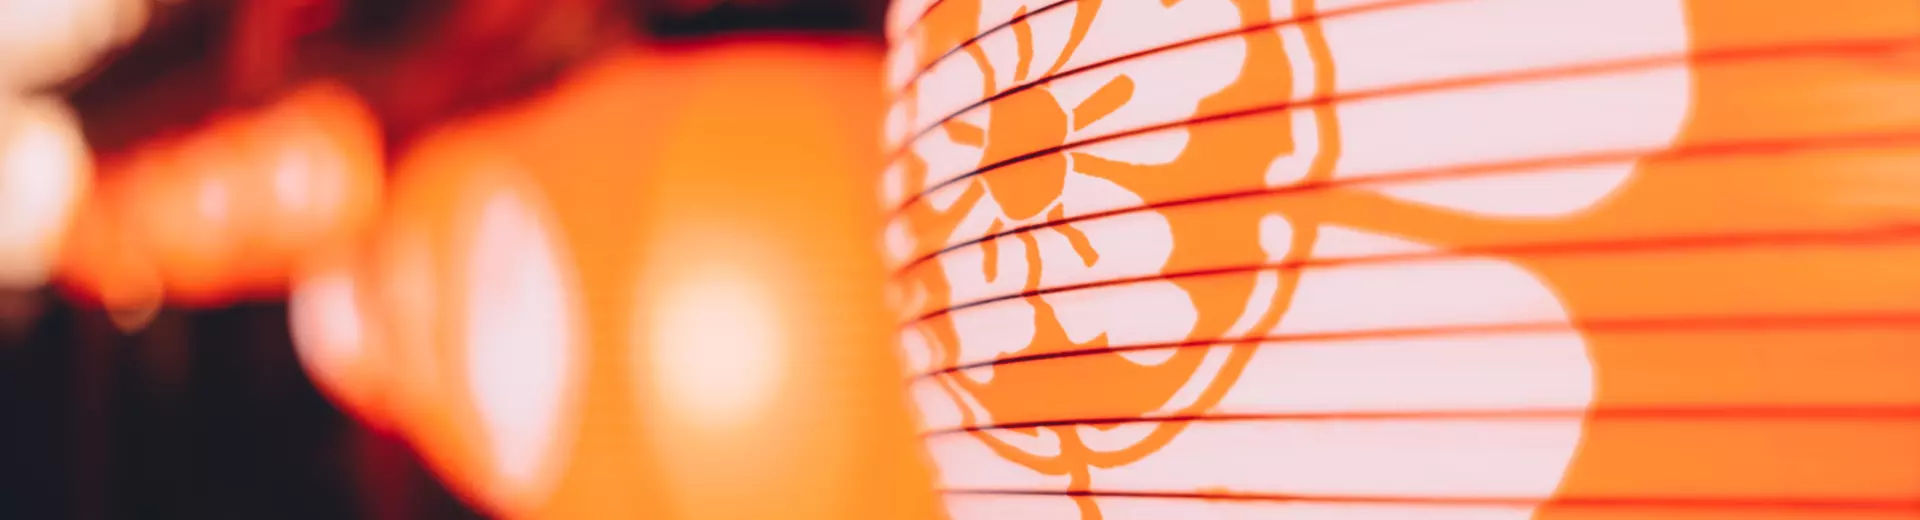 Orange paper lantern with white flower decoration